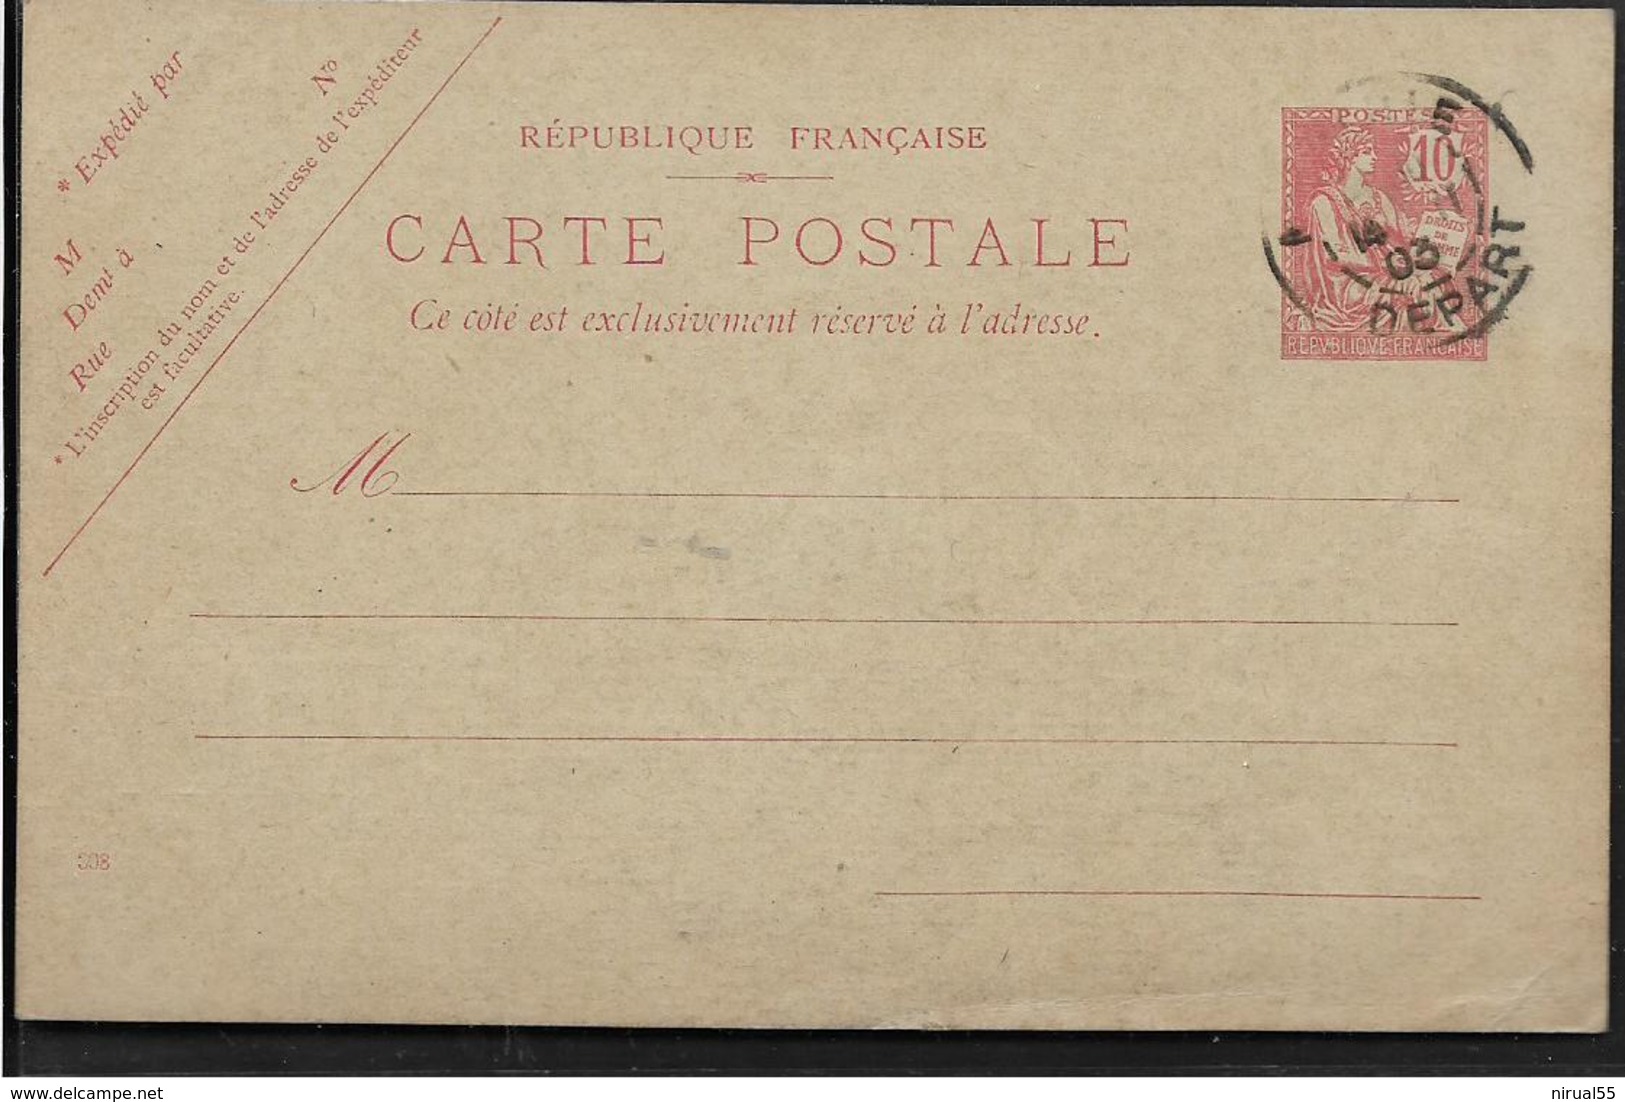 ENTIER POSTAL MARSEILLE Bouches Du Rhône Carte Postale MOUCHON 10c  CAD Marseille Départ 1903 REPIQUAGE Marseille .....G - Cartes Postales Repiquages (avant 1995)